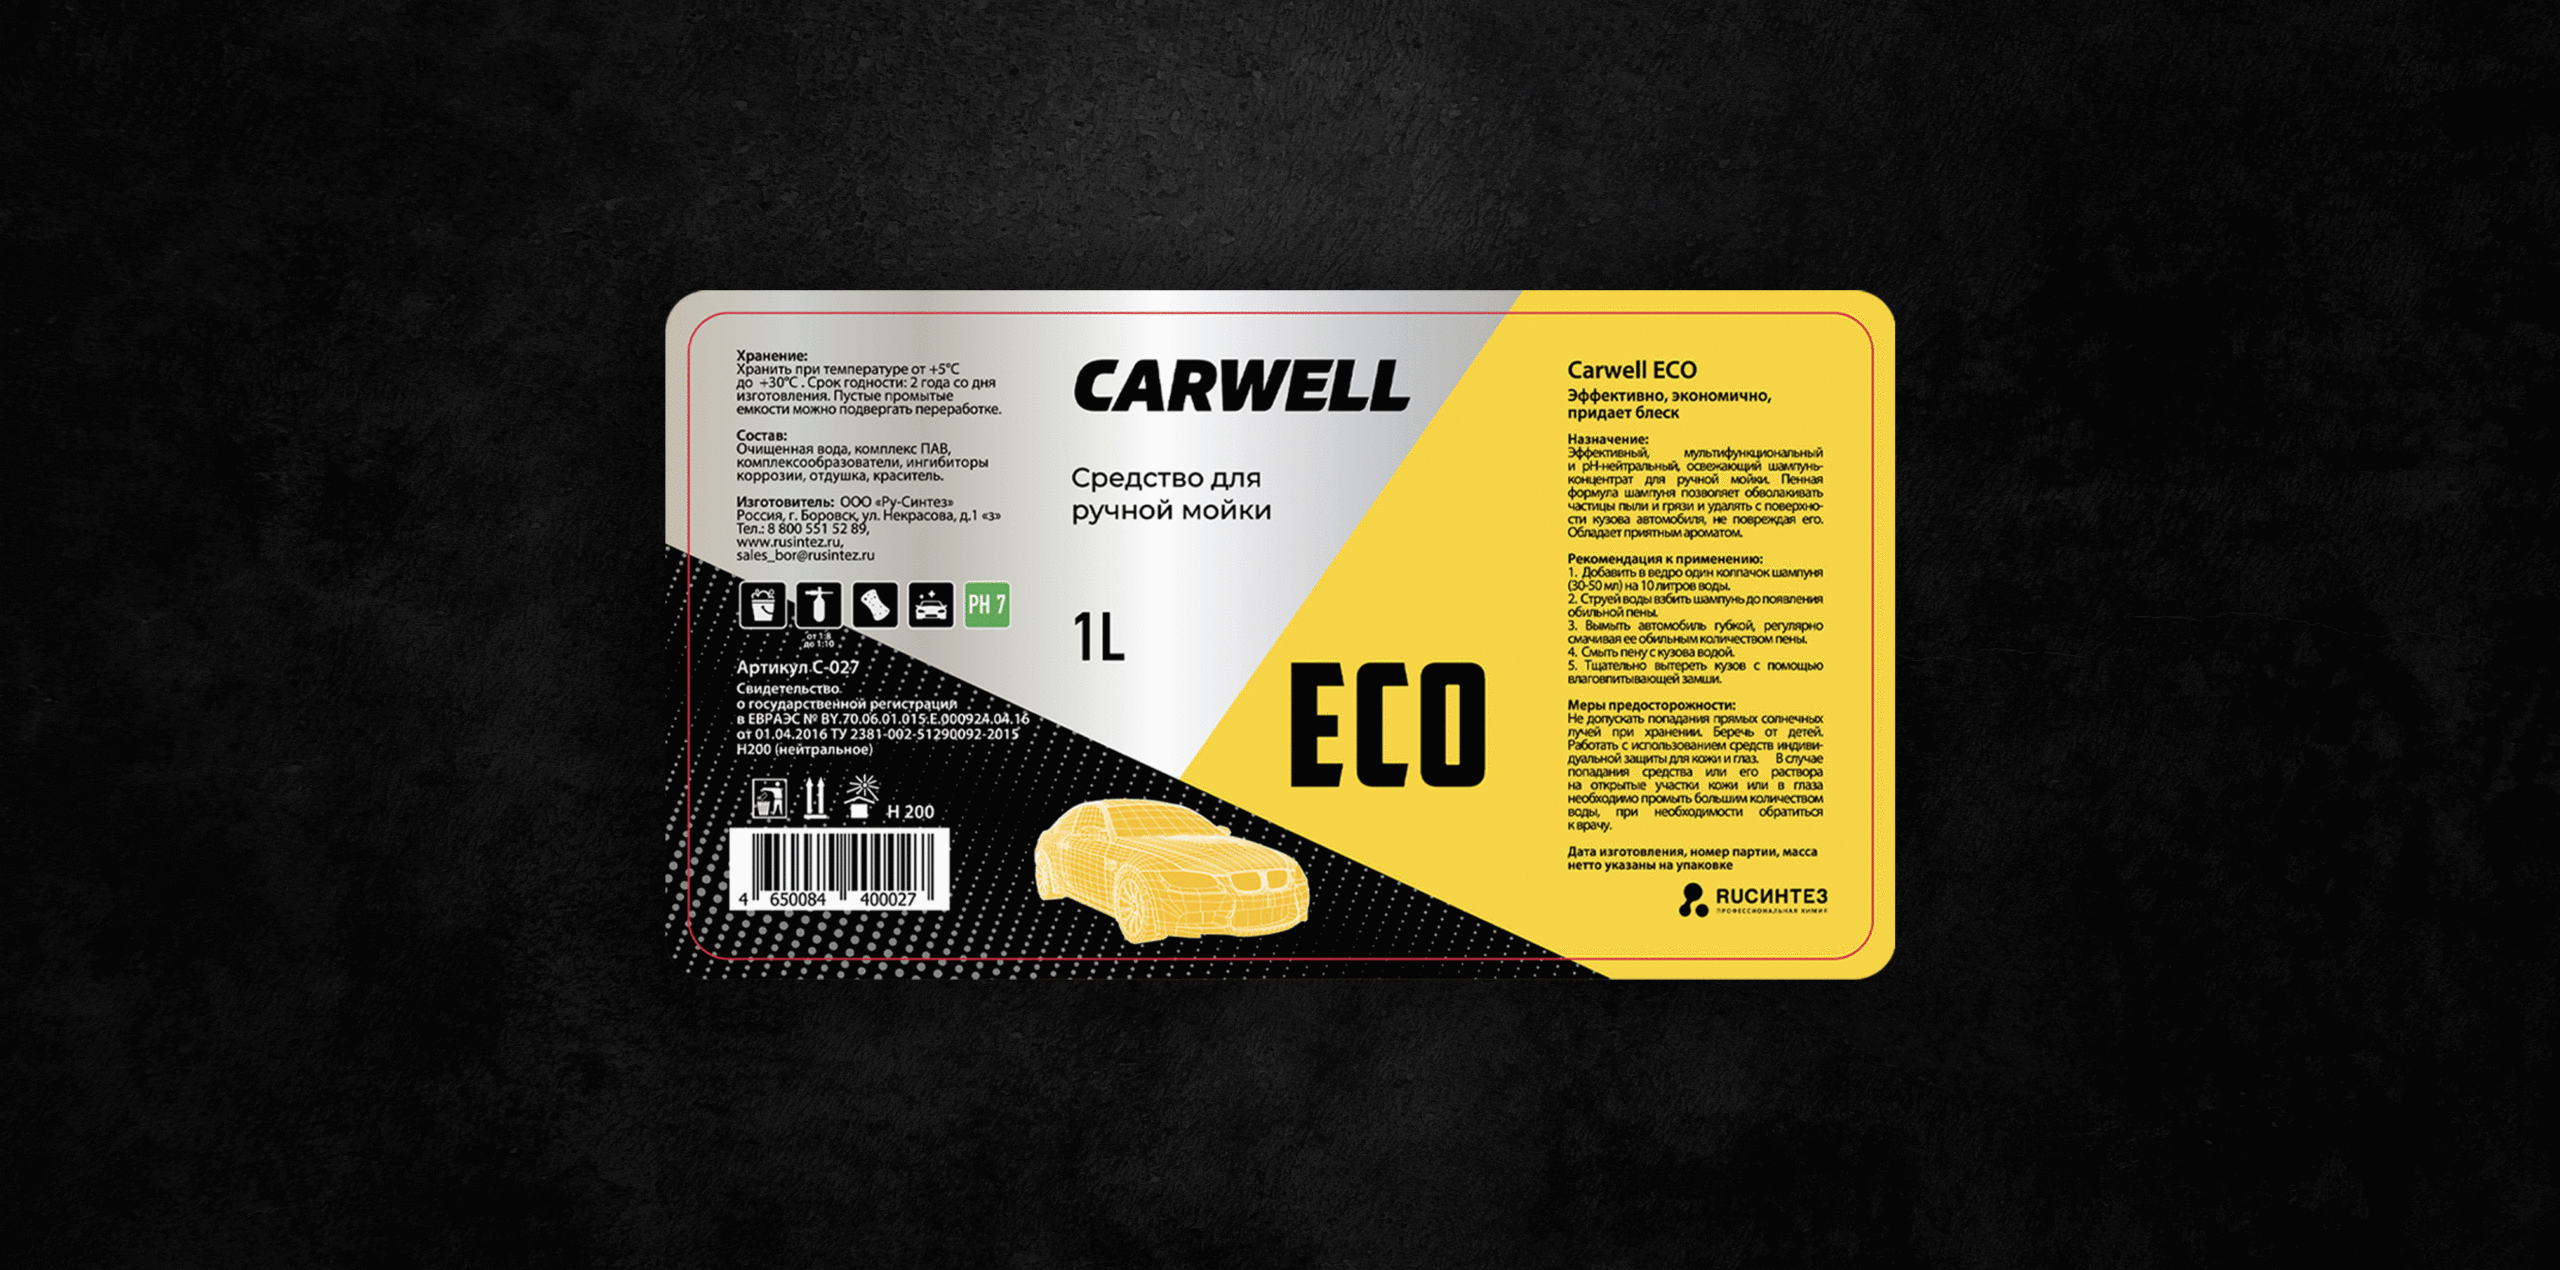 1 2 scaled - Carwell